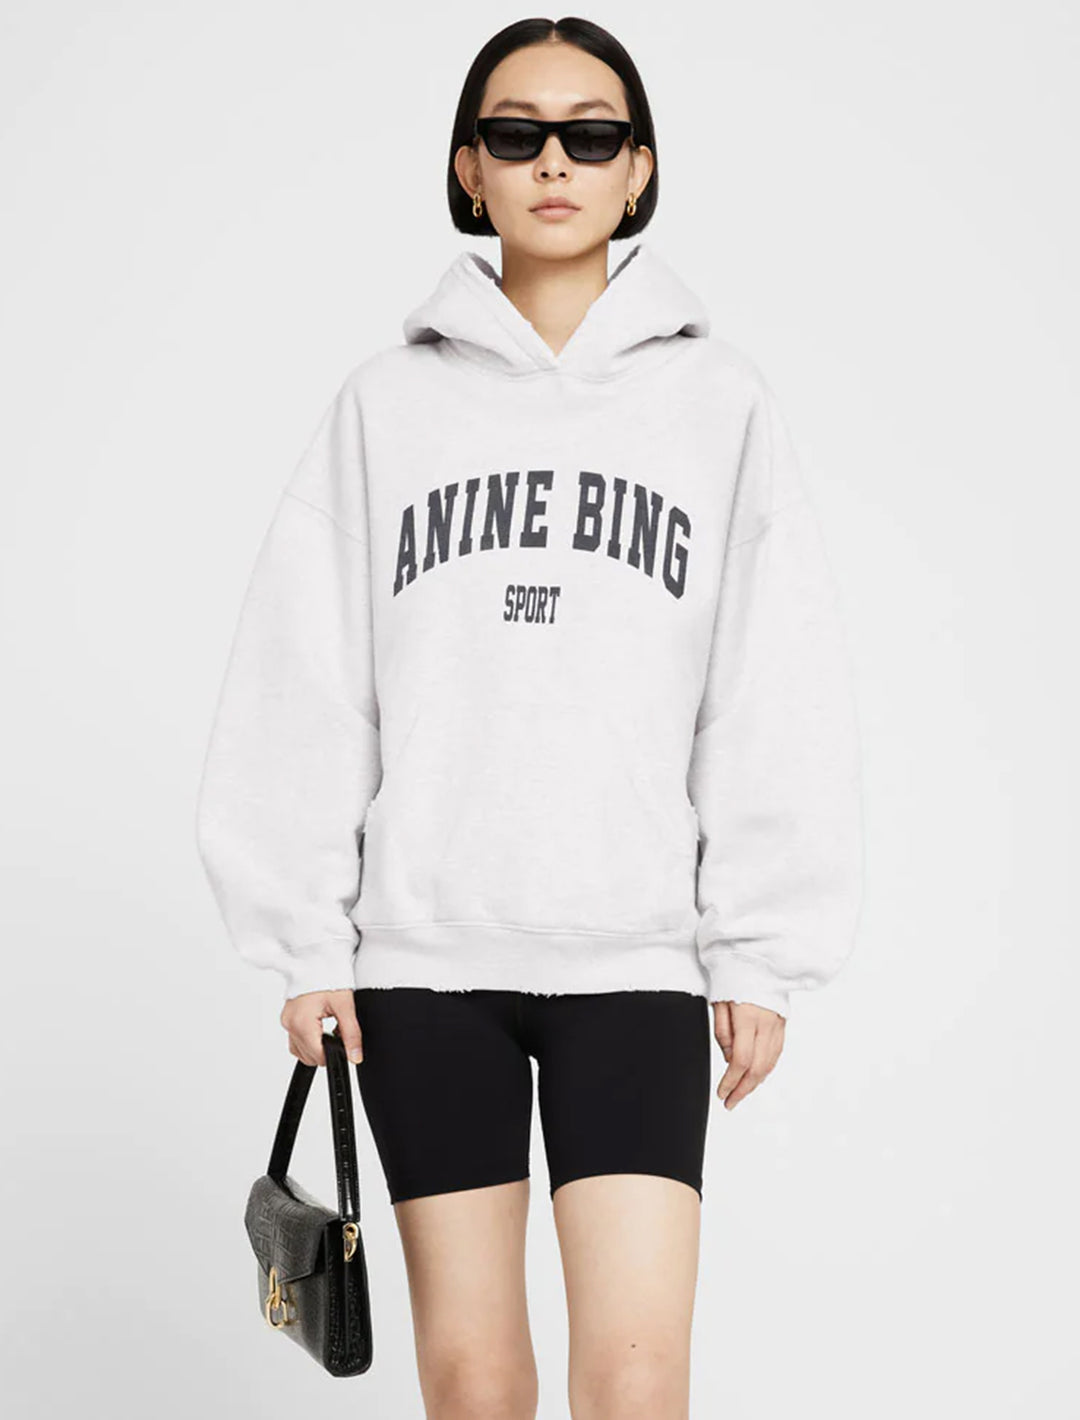 Model wearing Anine Bing's harvey sweatshirt in heather grey.